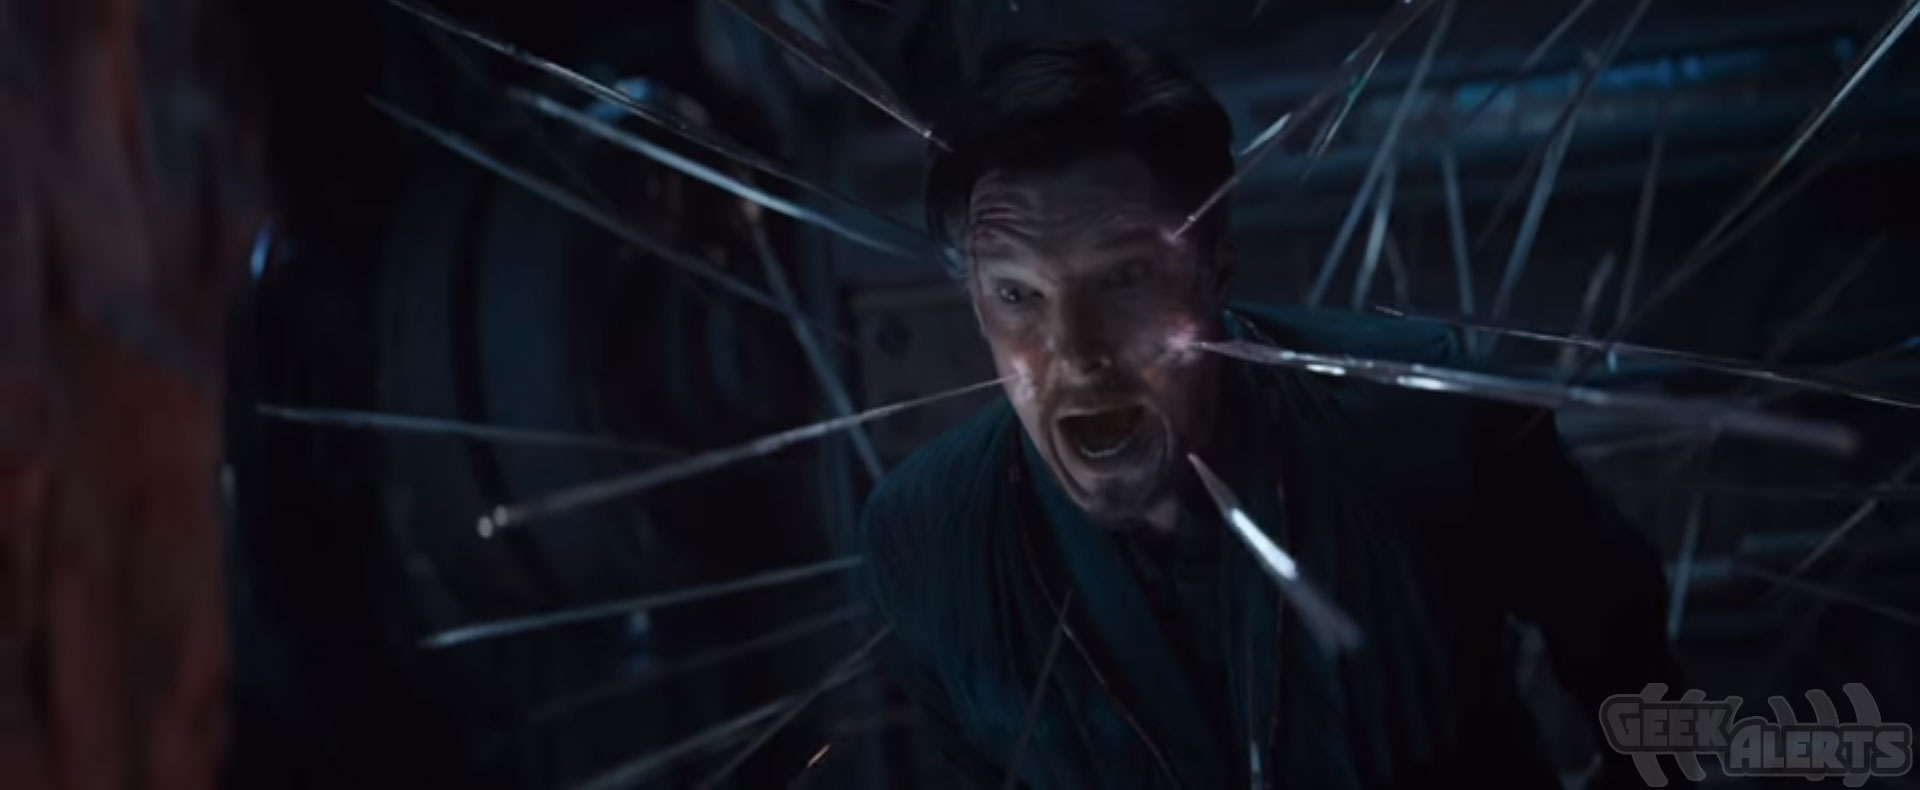 New Marvel Studios’ Avengers Infinity War Official Trailer